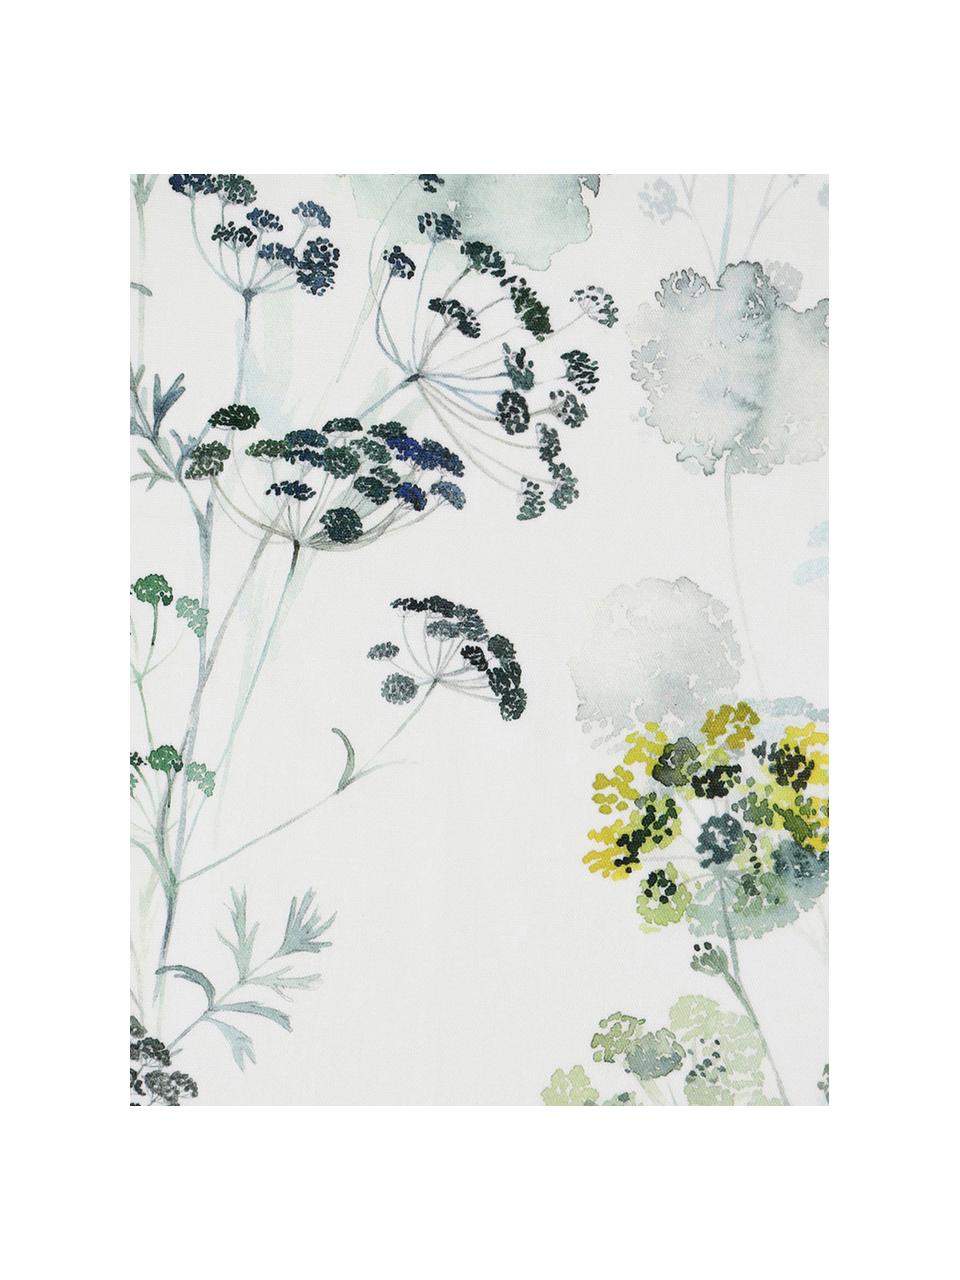 Tafelkleed Herbier met aquarel print, Katoen, Wit, groentinten, 4-6 personen (B 160 x L 160 cm)